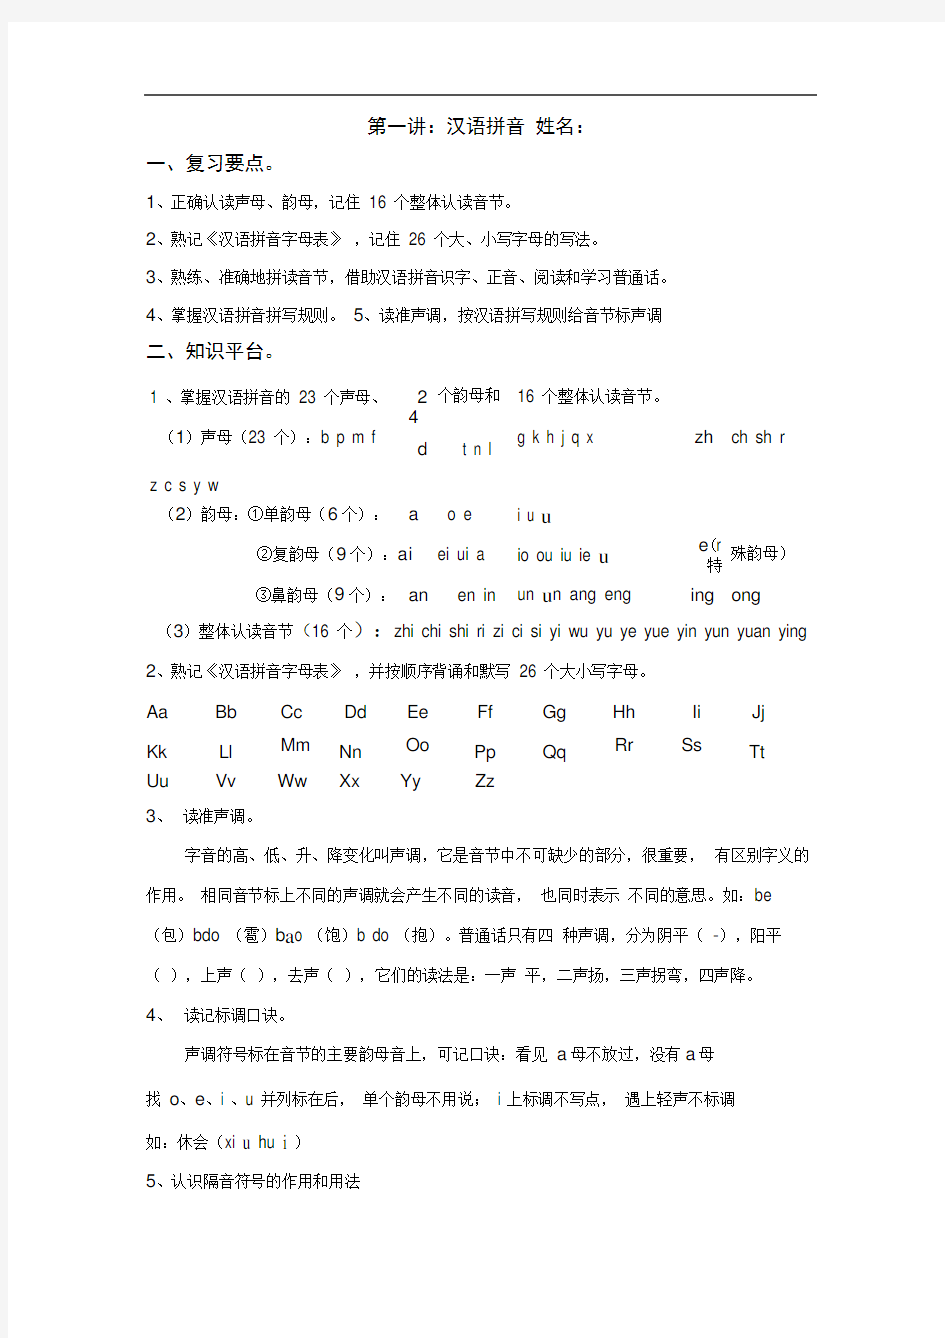 完整小升初汉语拼音练习及答案